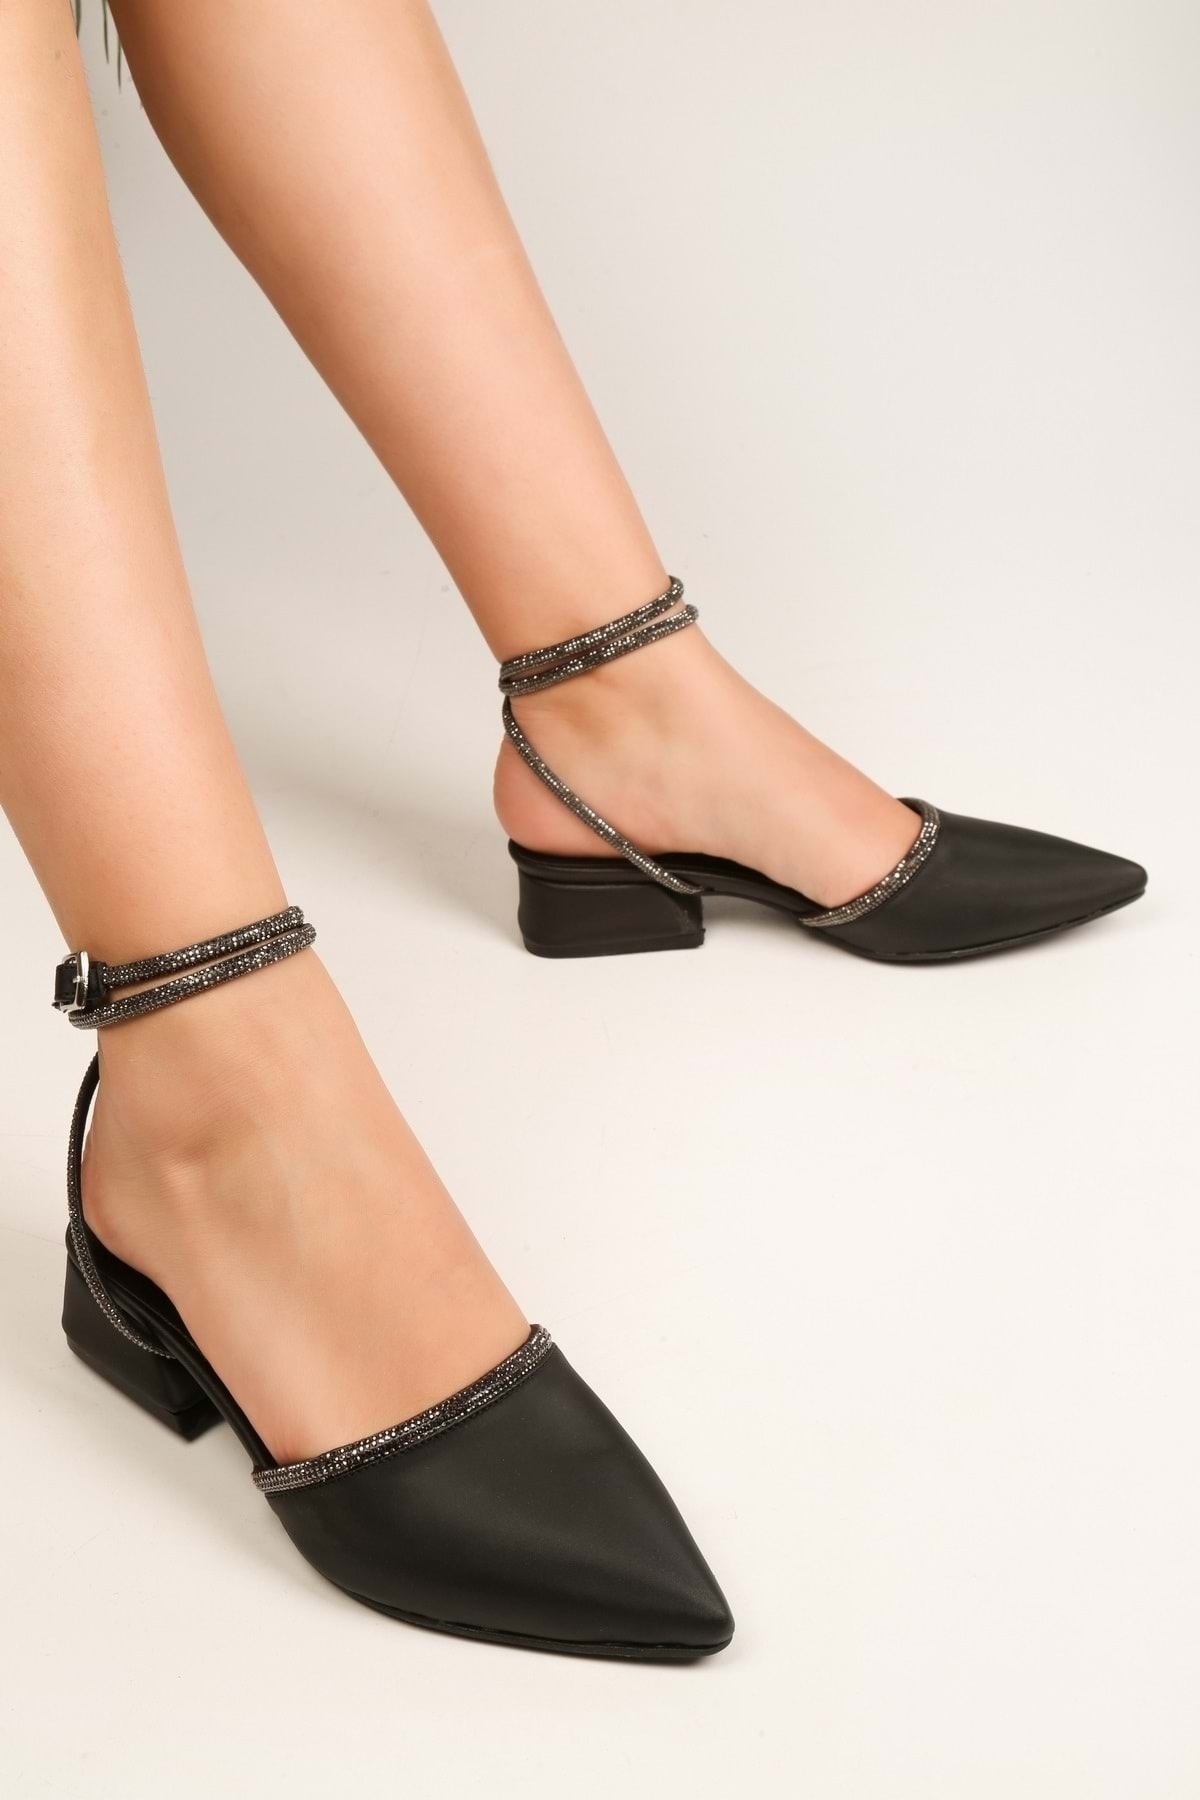 Levně Shoeberry Women's Yune Black Satin Stitched Heels Shoes